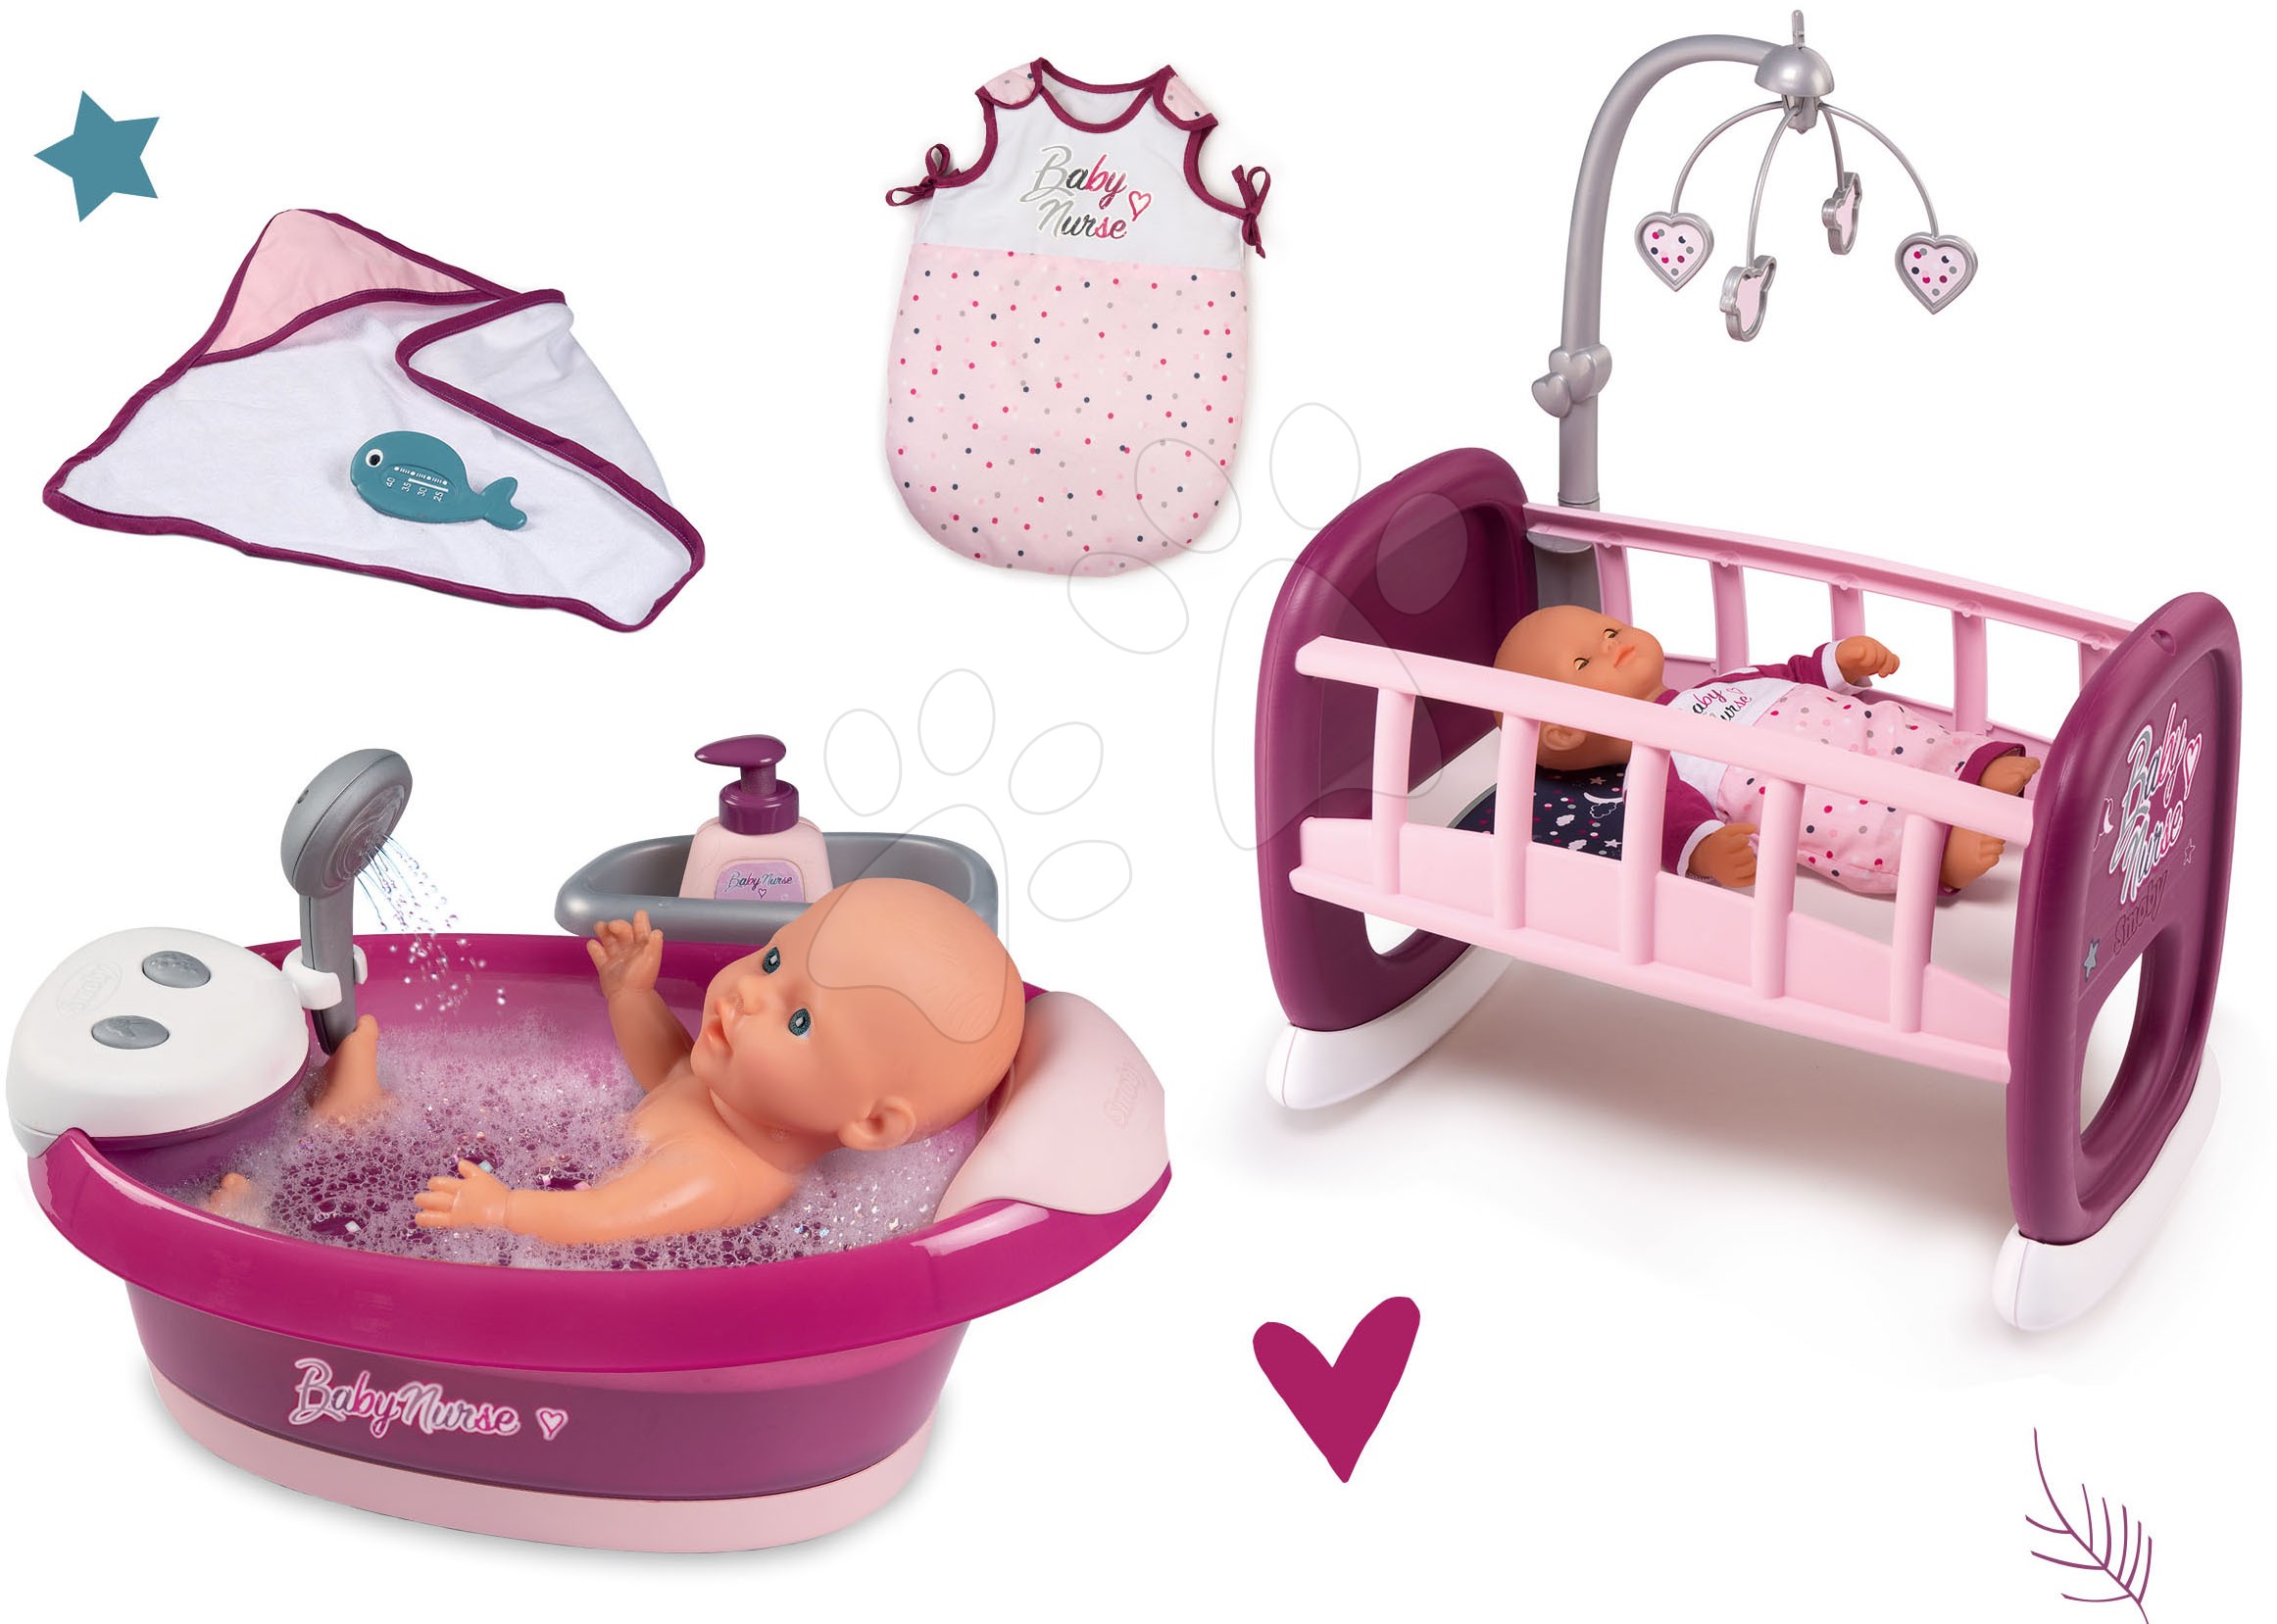 Domčeky pre bábiky sety - Set vanička s tečúcou vodou elektronická Violette Baby Nurse Smoby so spacím vakom a kolíska s kolotočom